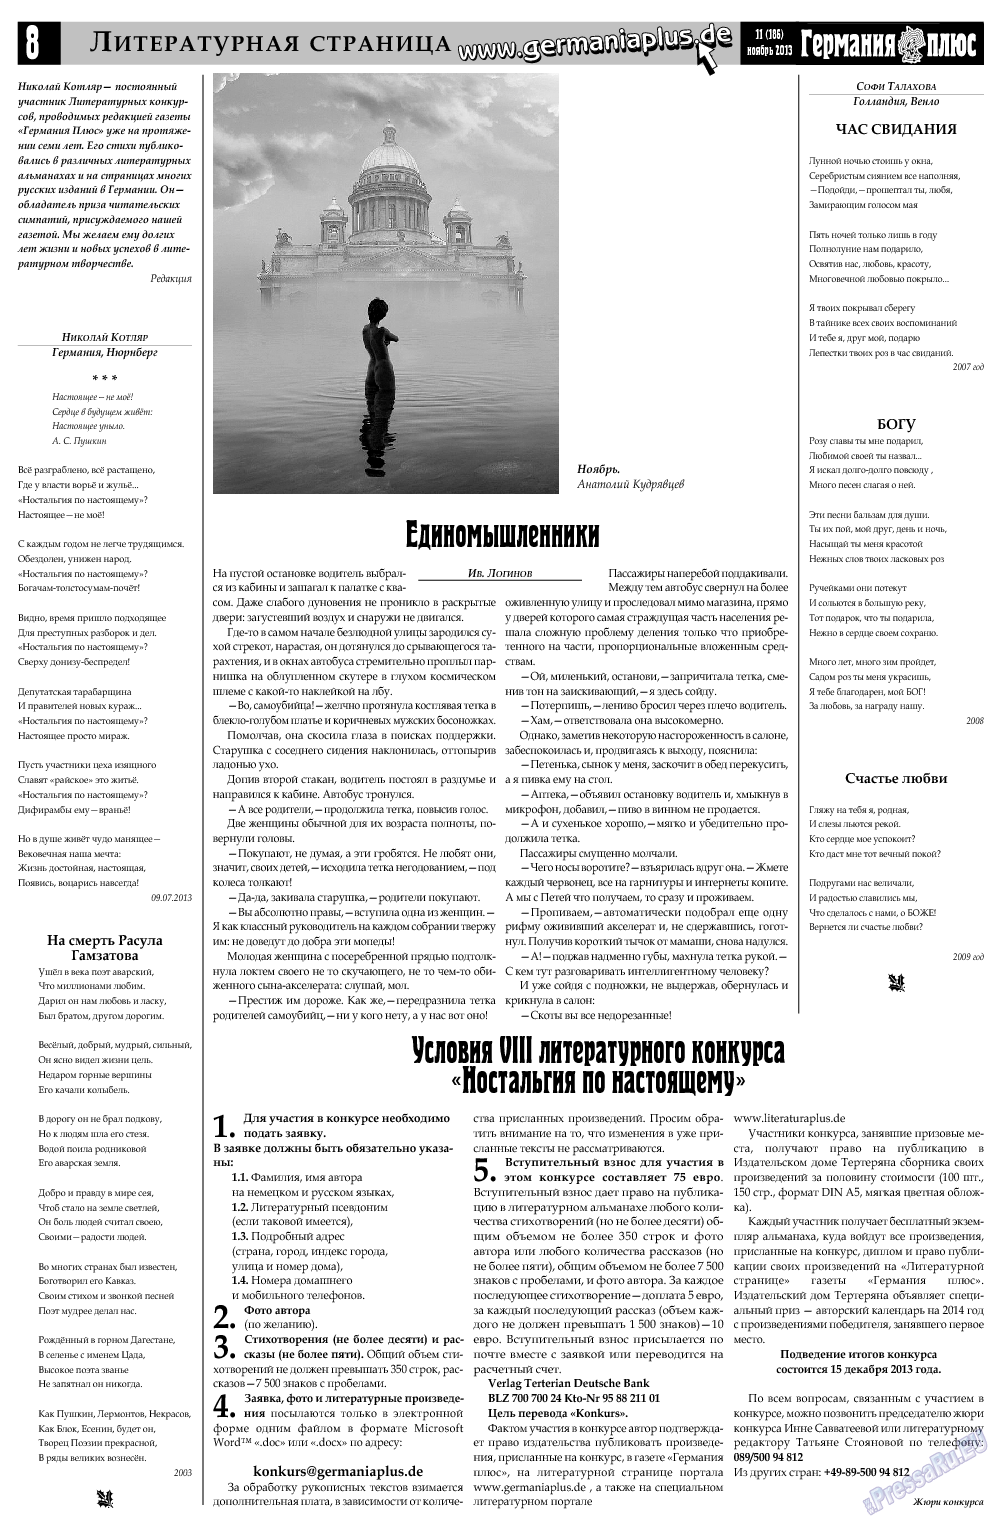 Германия плюс, газета. 2013 №11 стр.8